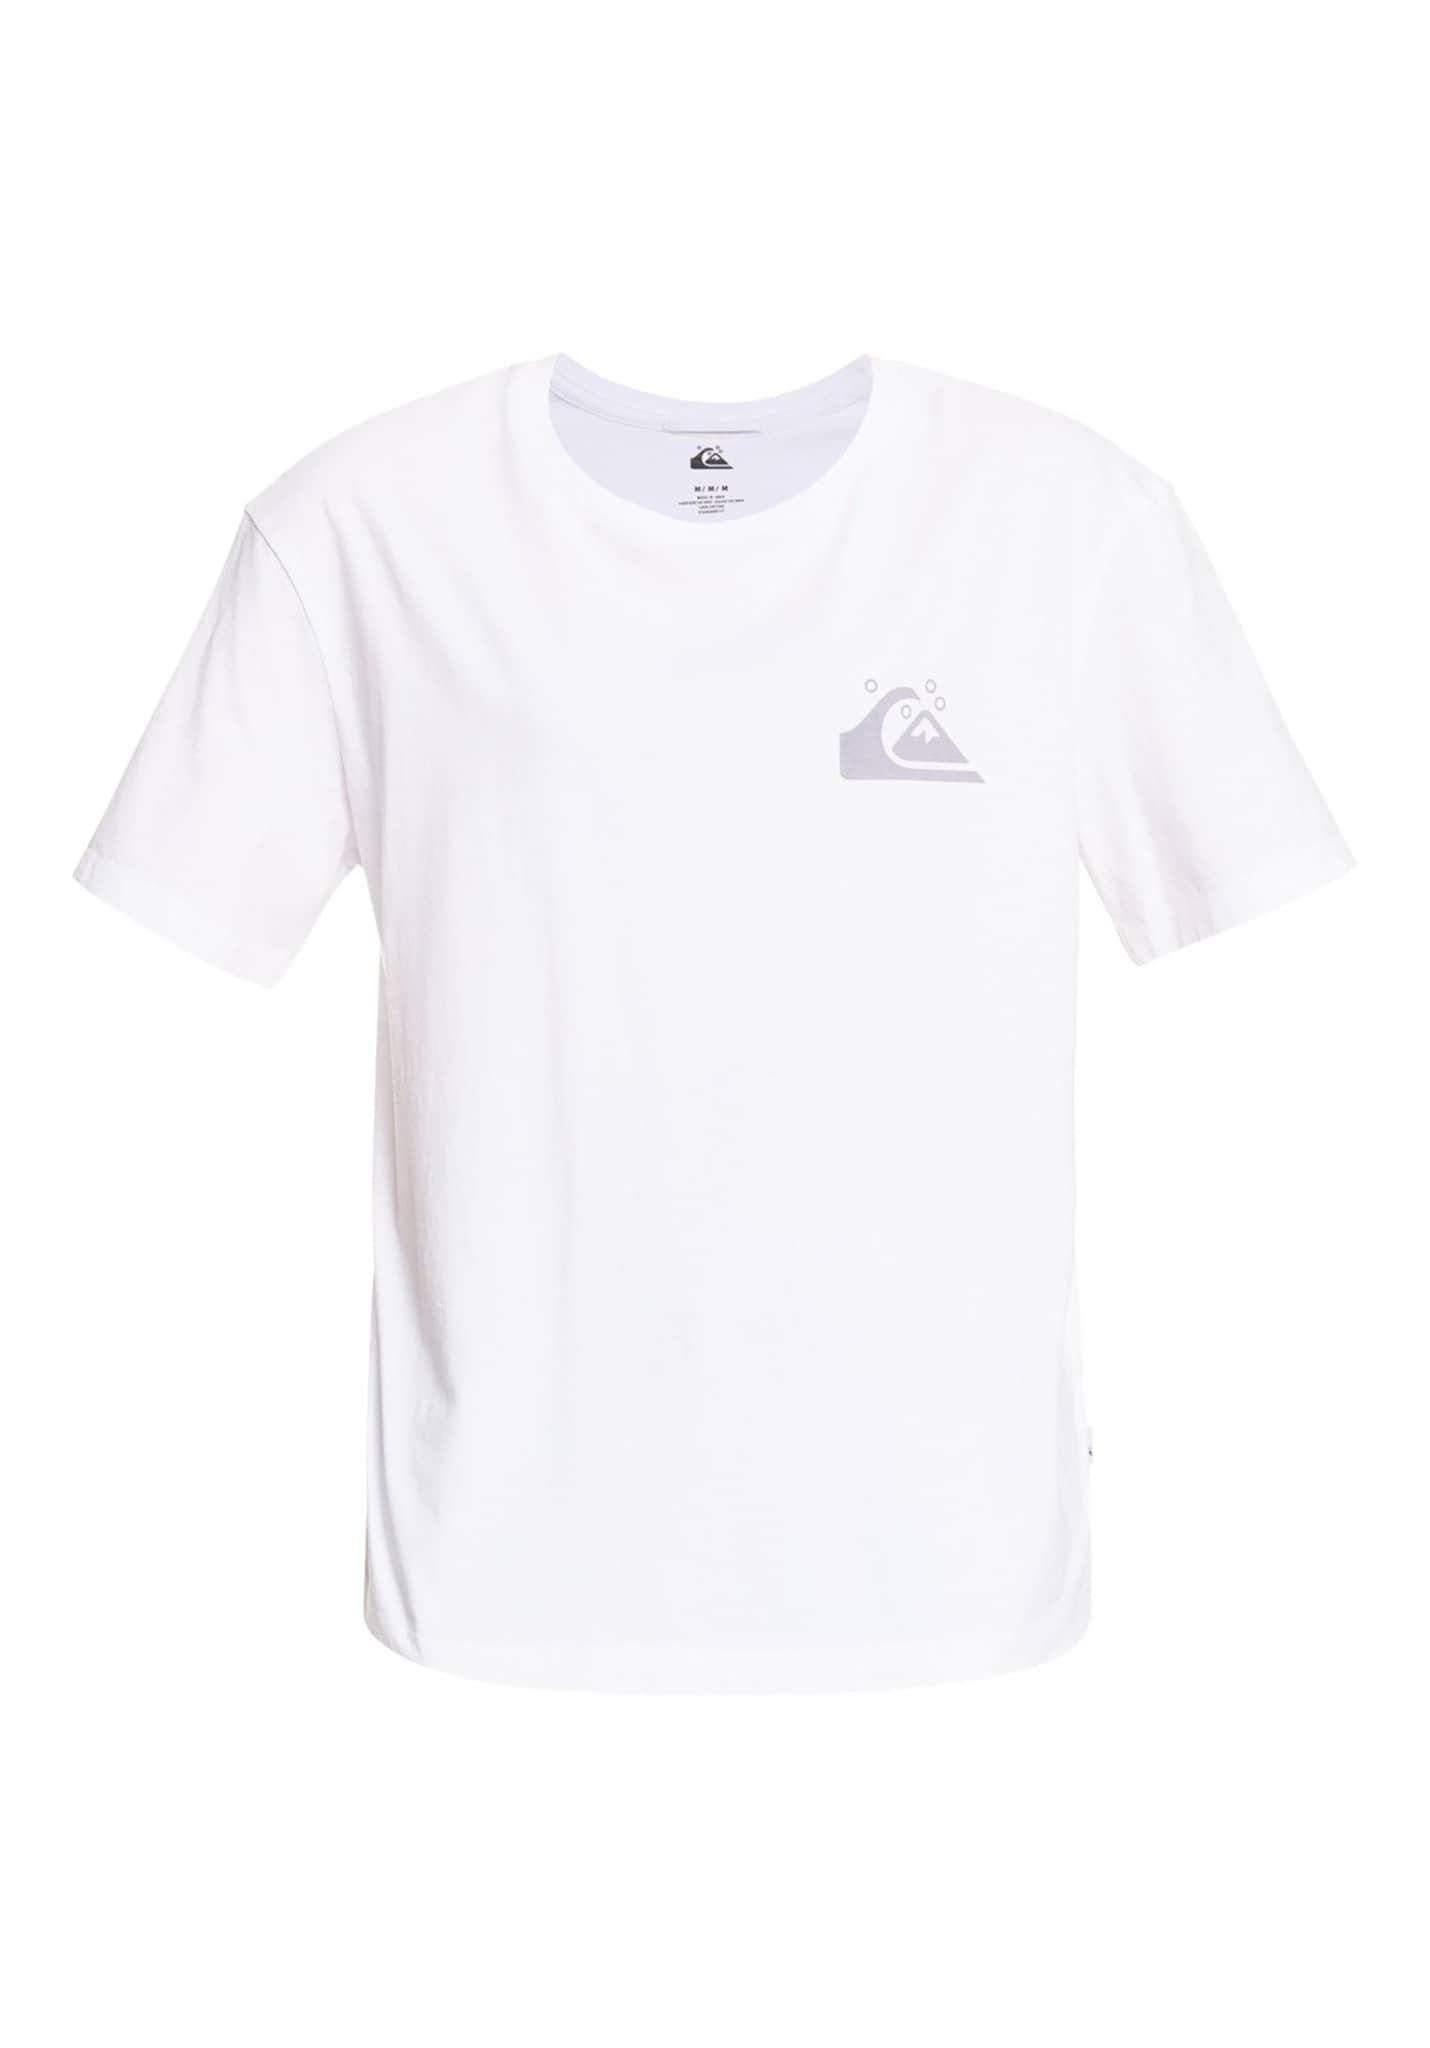 Quiksilver Standard T-Shirt weiß XL